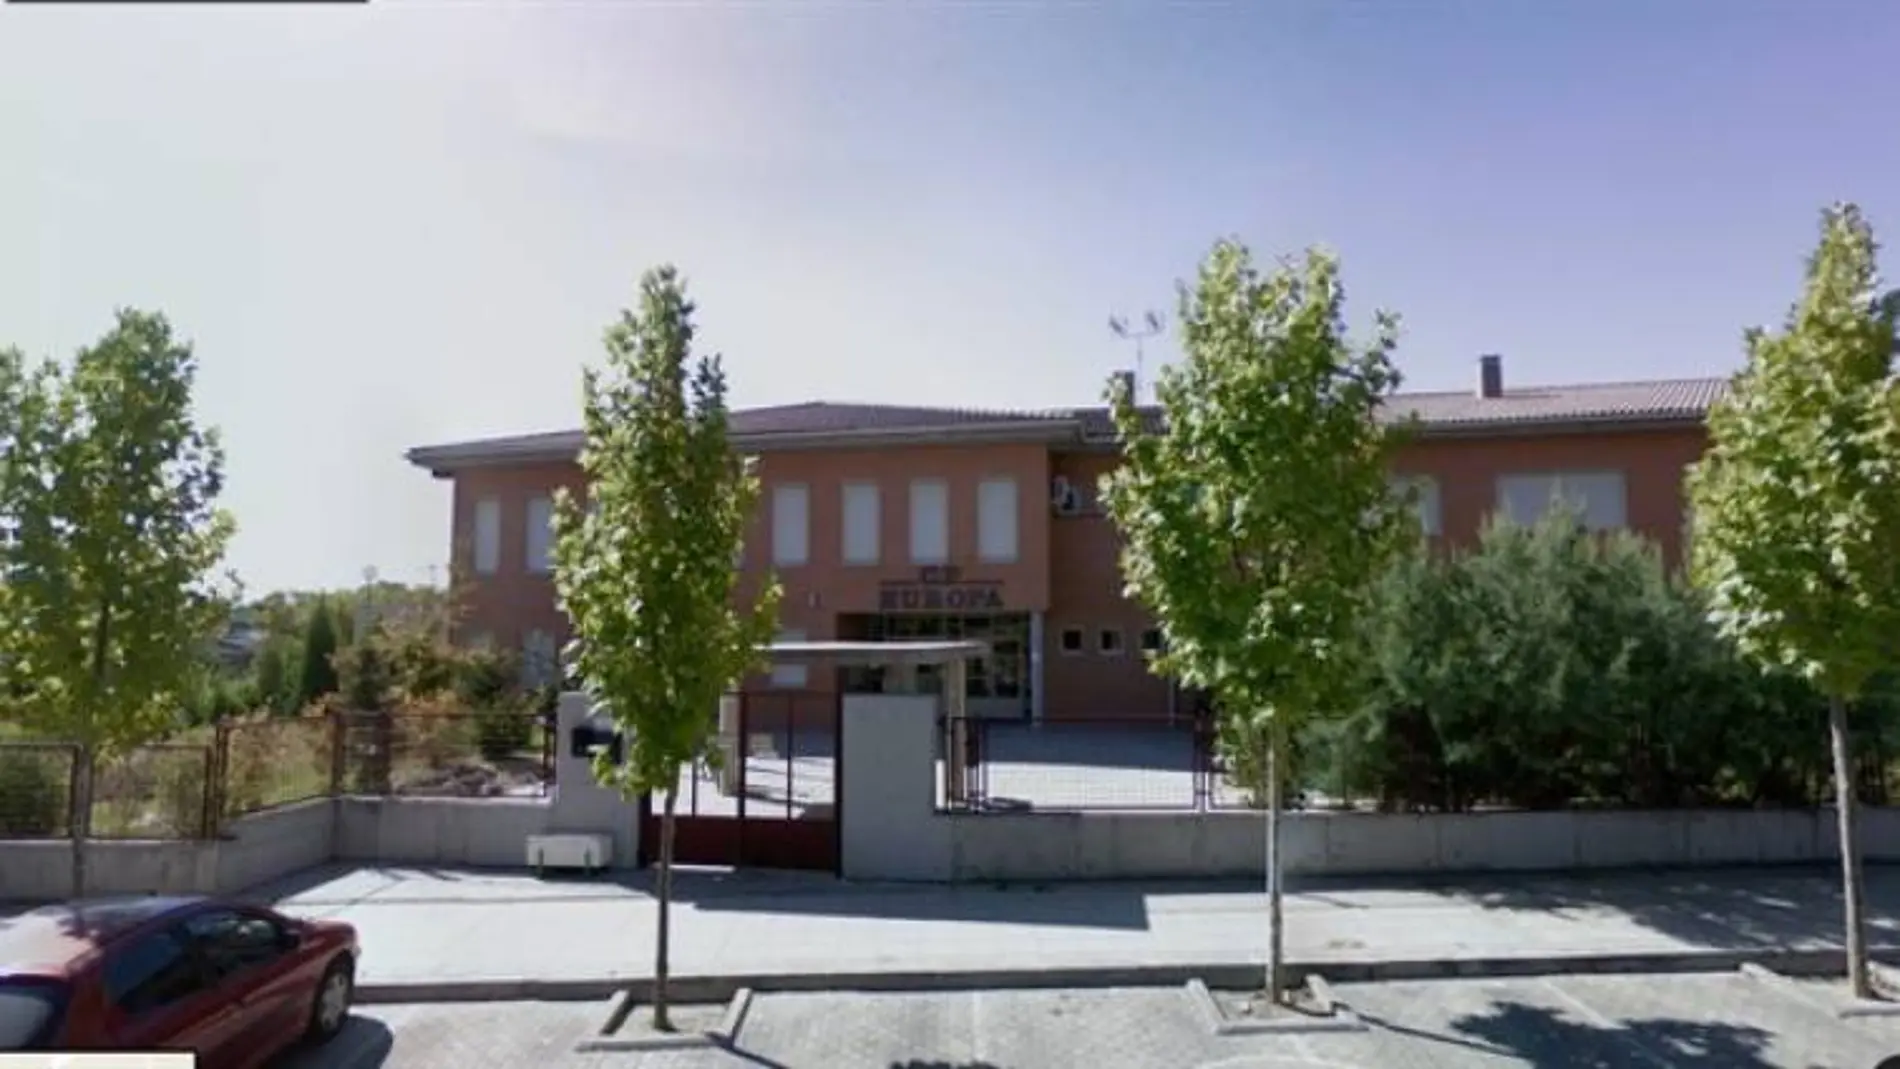 Colegio público de Educación Infantil y Primaria 'Europa' en Pinto donde ayer intentaron secuestrar a un niño